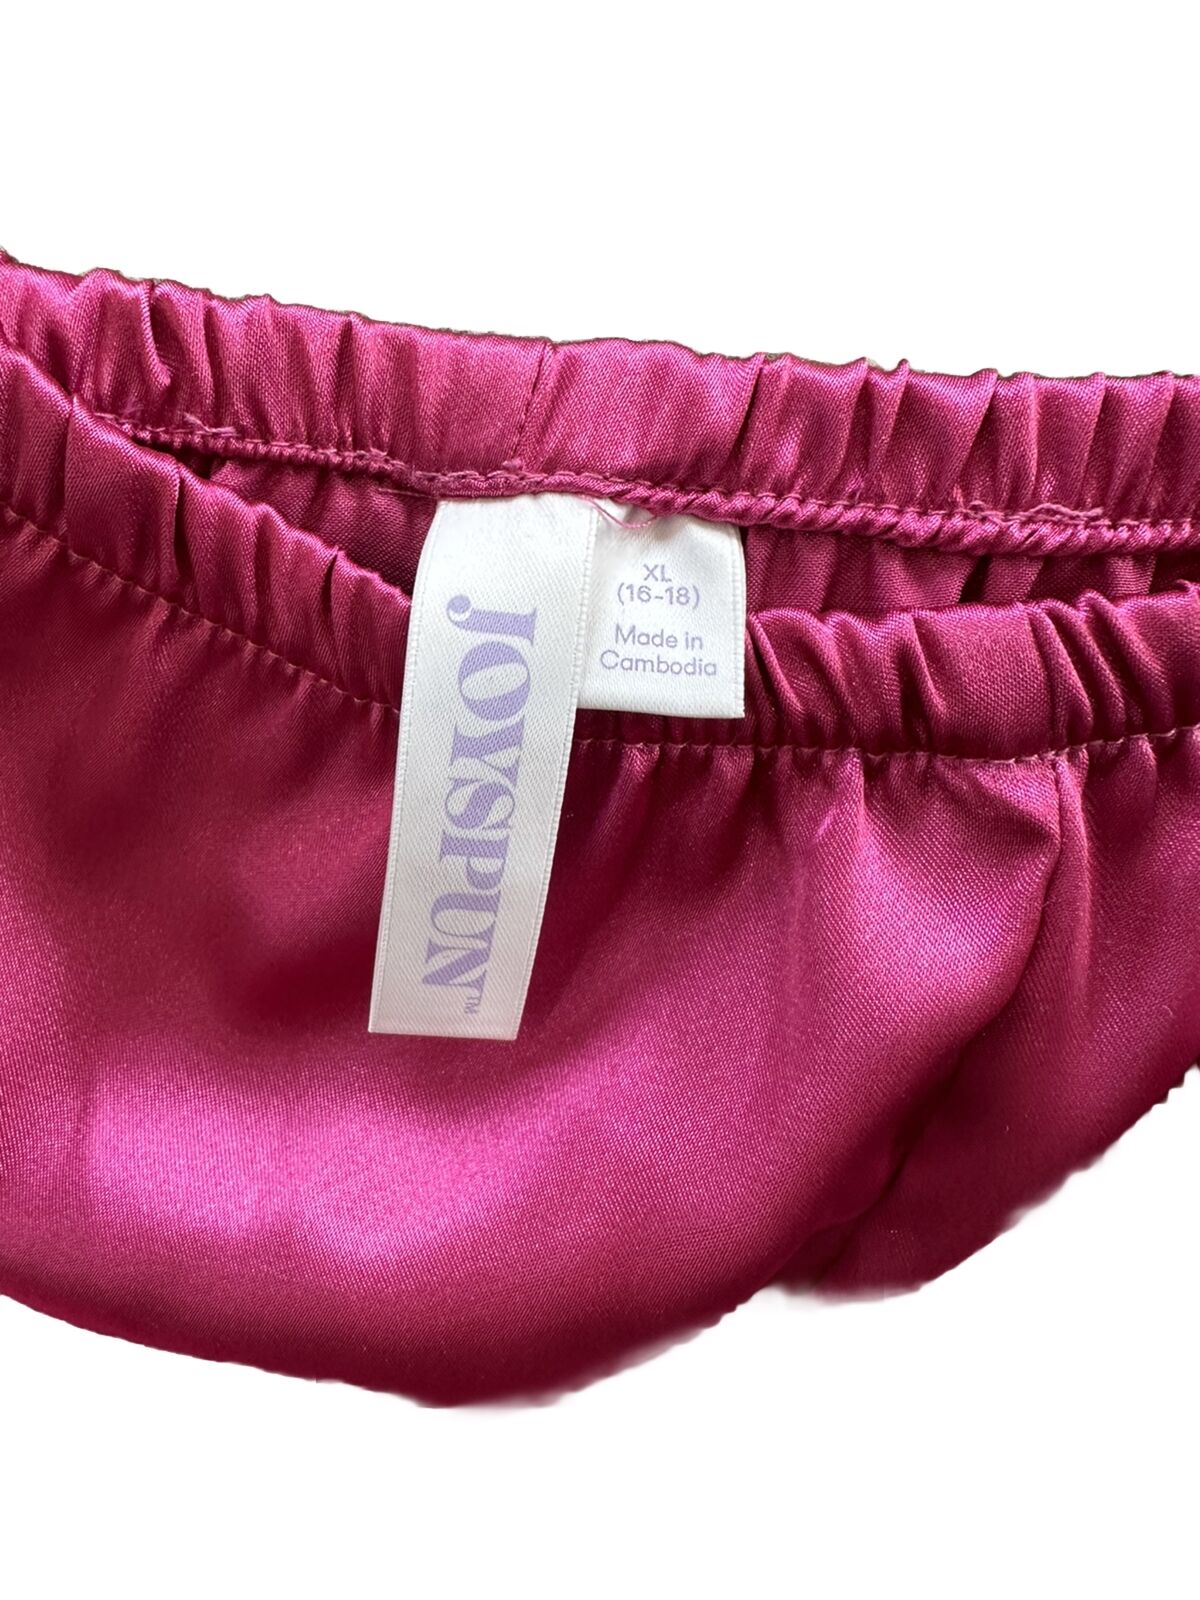 Joyspun Womens Pink Satin Pajamas 2pcs Pajama Set w/ Sexy Cami Shorts Set XL